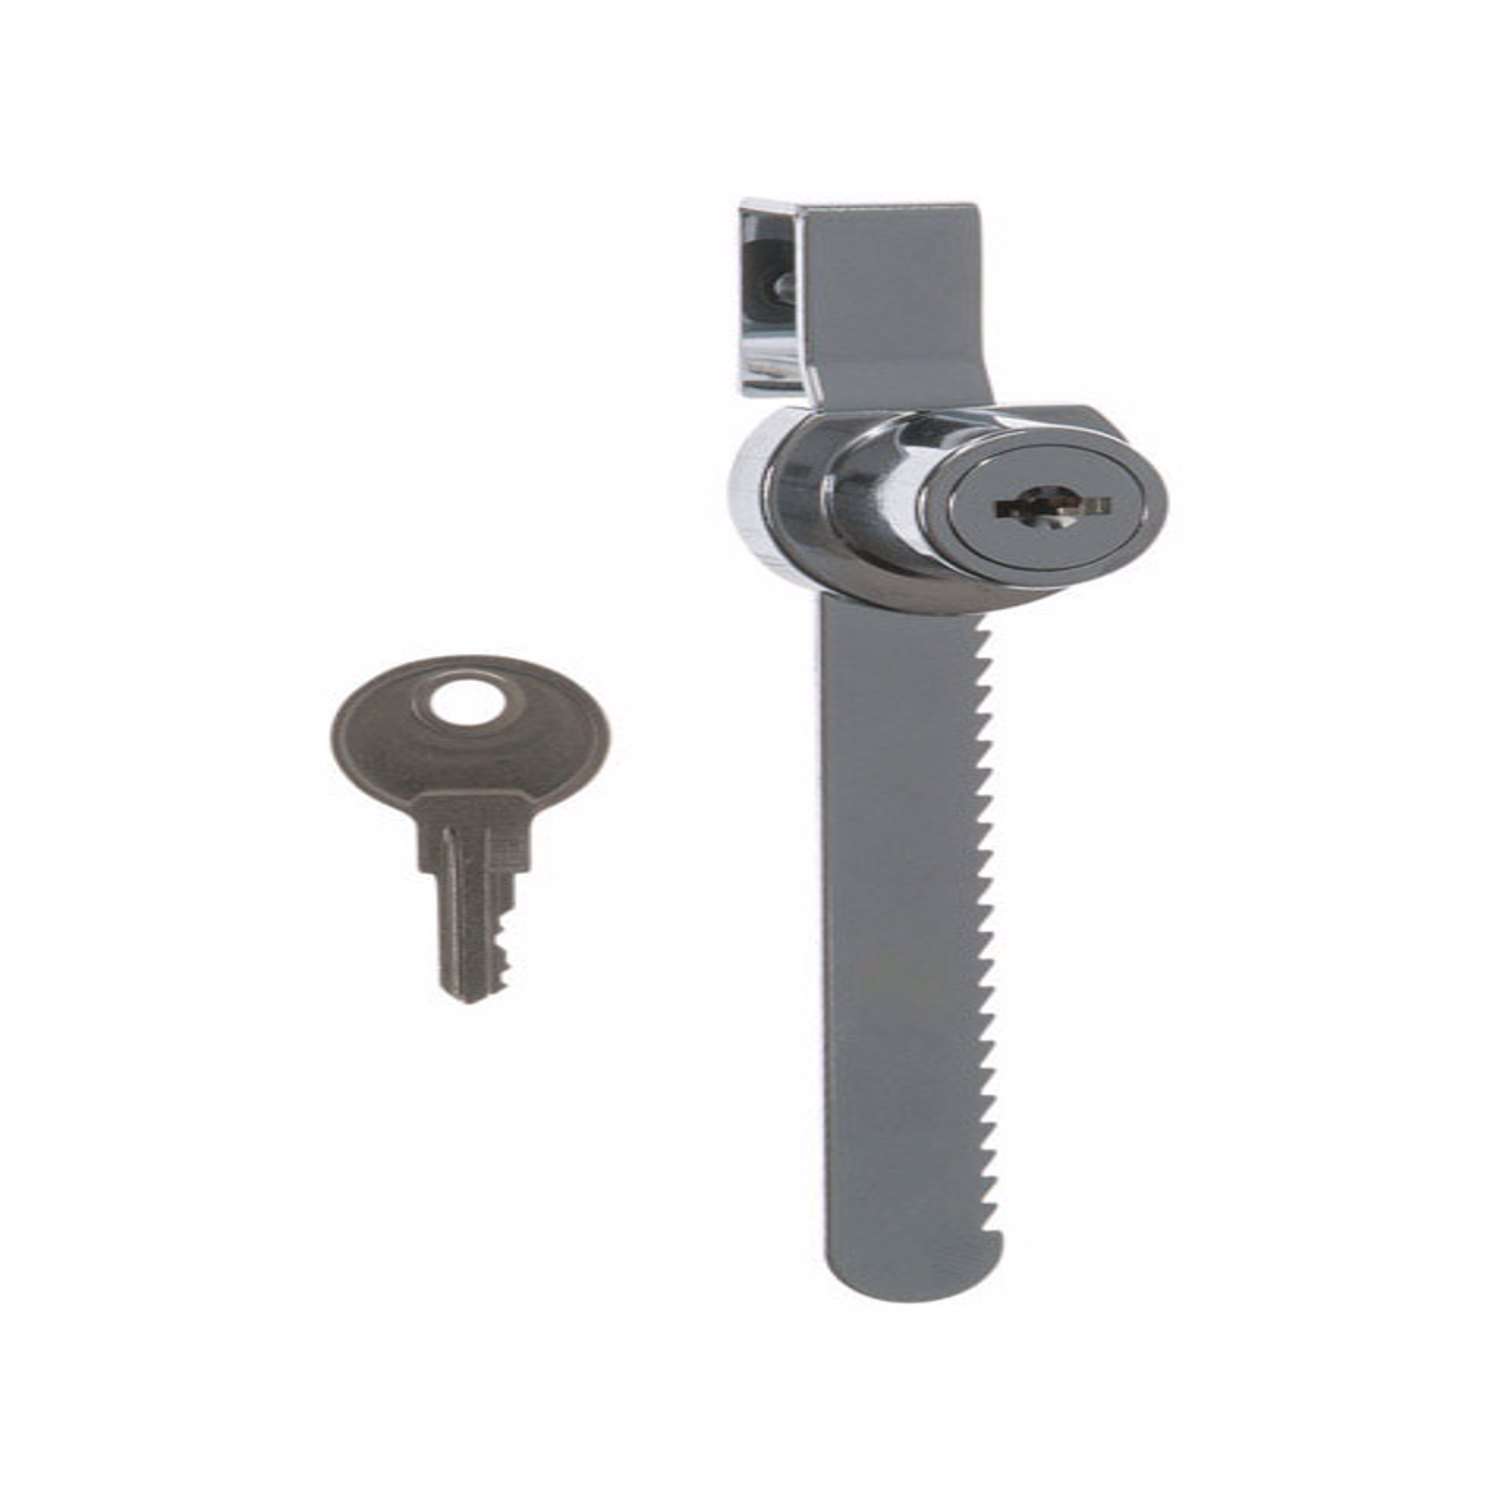 key lock frame plug,etc Steering lock kit incl spring plunger two keys pin